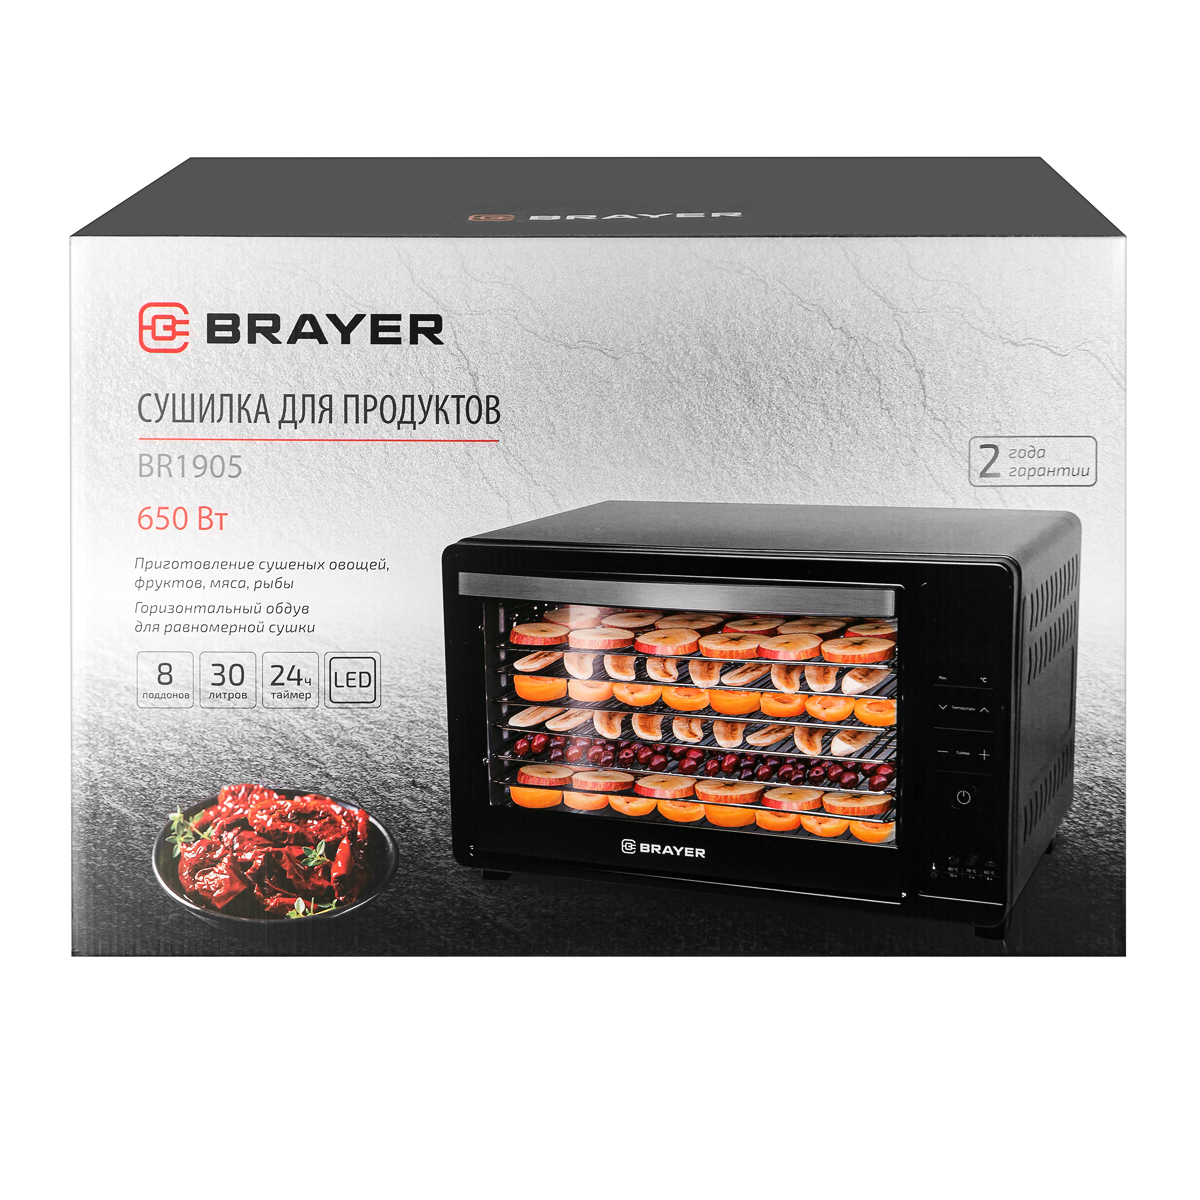 Сушилка для продуктов BRAYER BR1905